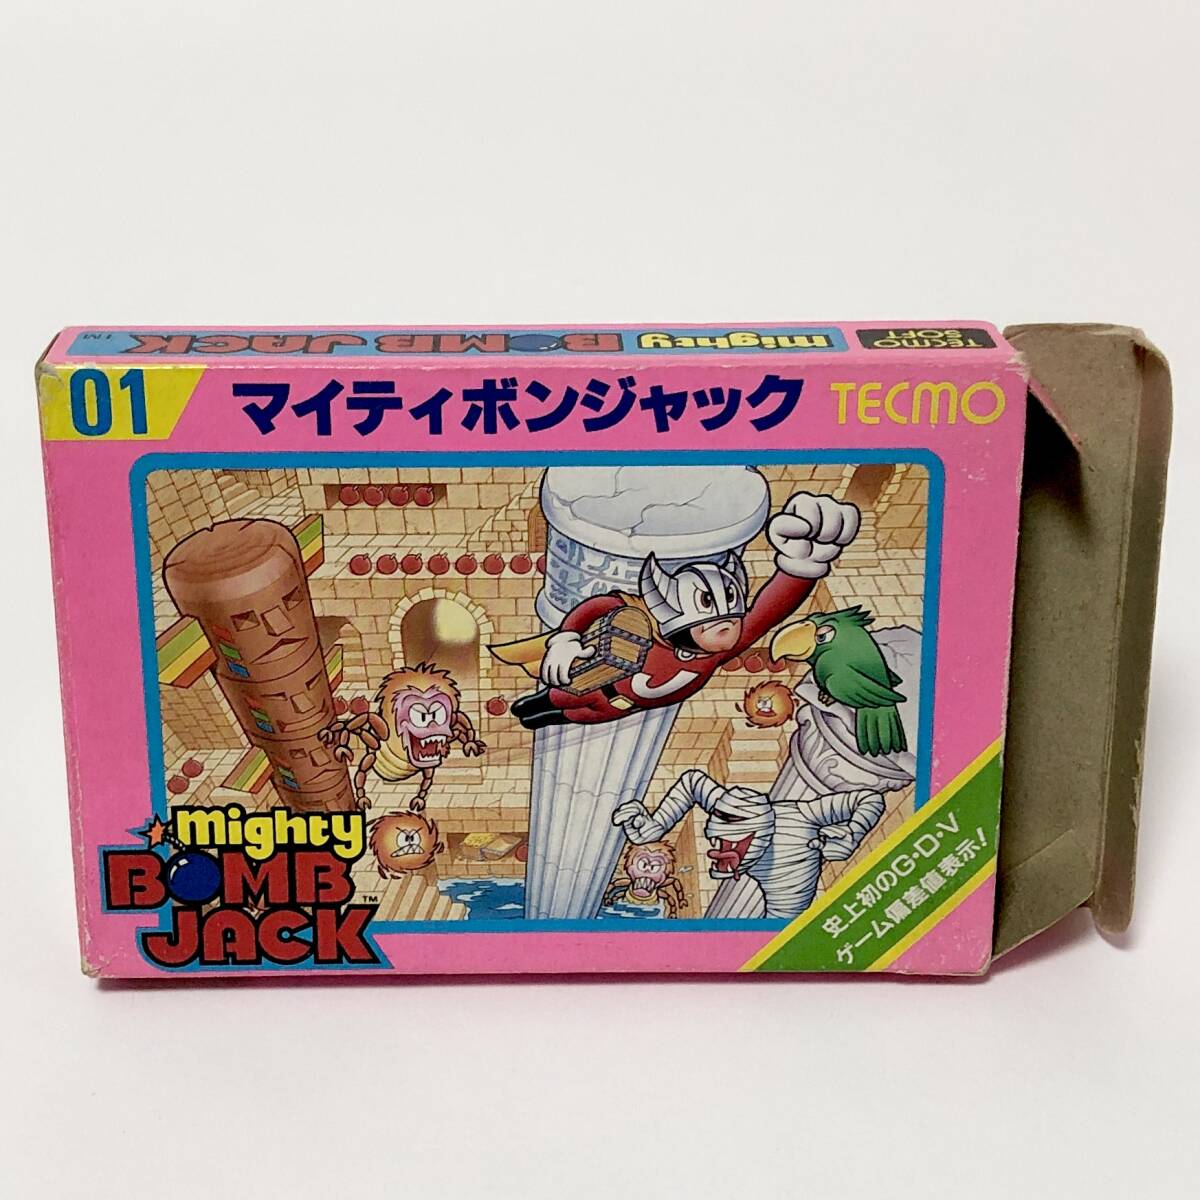 ファミコン マイティボンジャック 箱説付き 痛みあり 動作確認済み テクモ レトロゲーム Famicom Mighty BombJack CIB Tested Tecmo_画像2